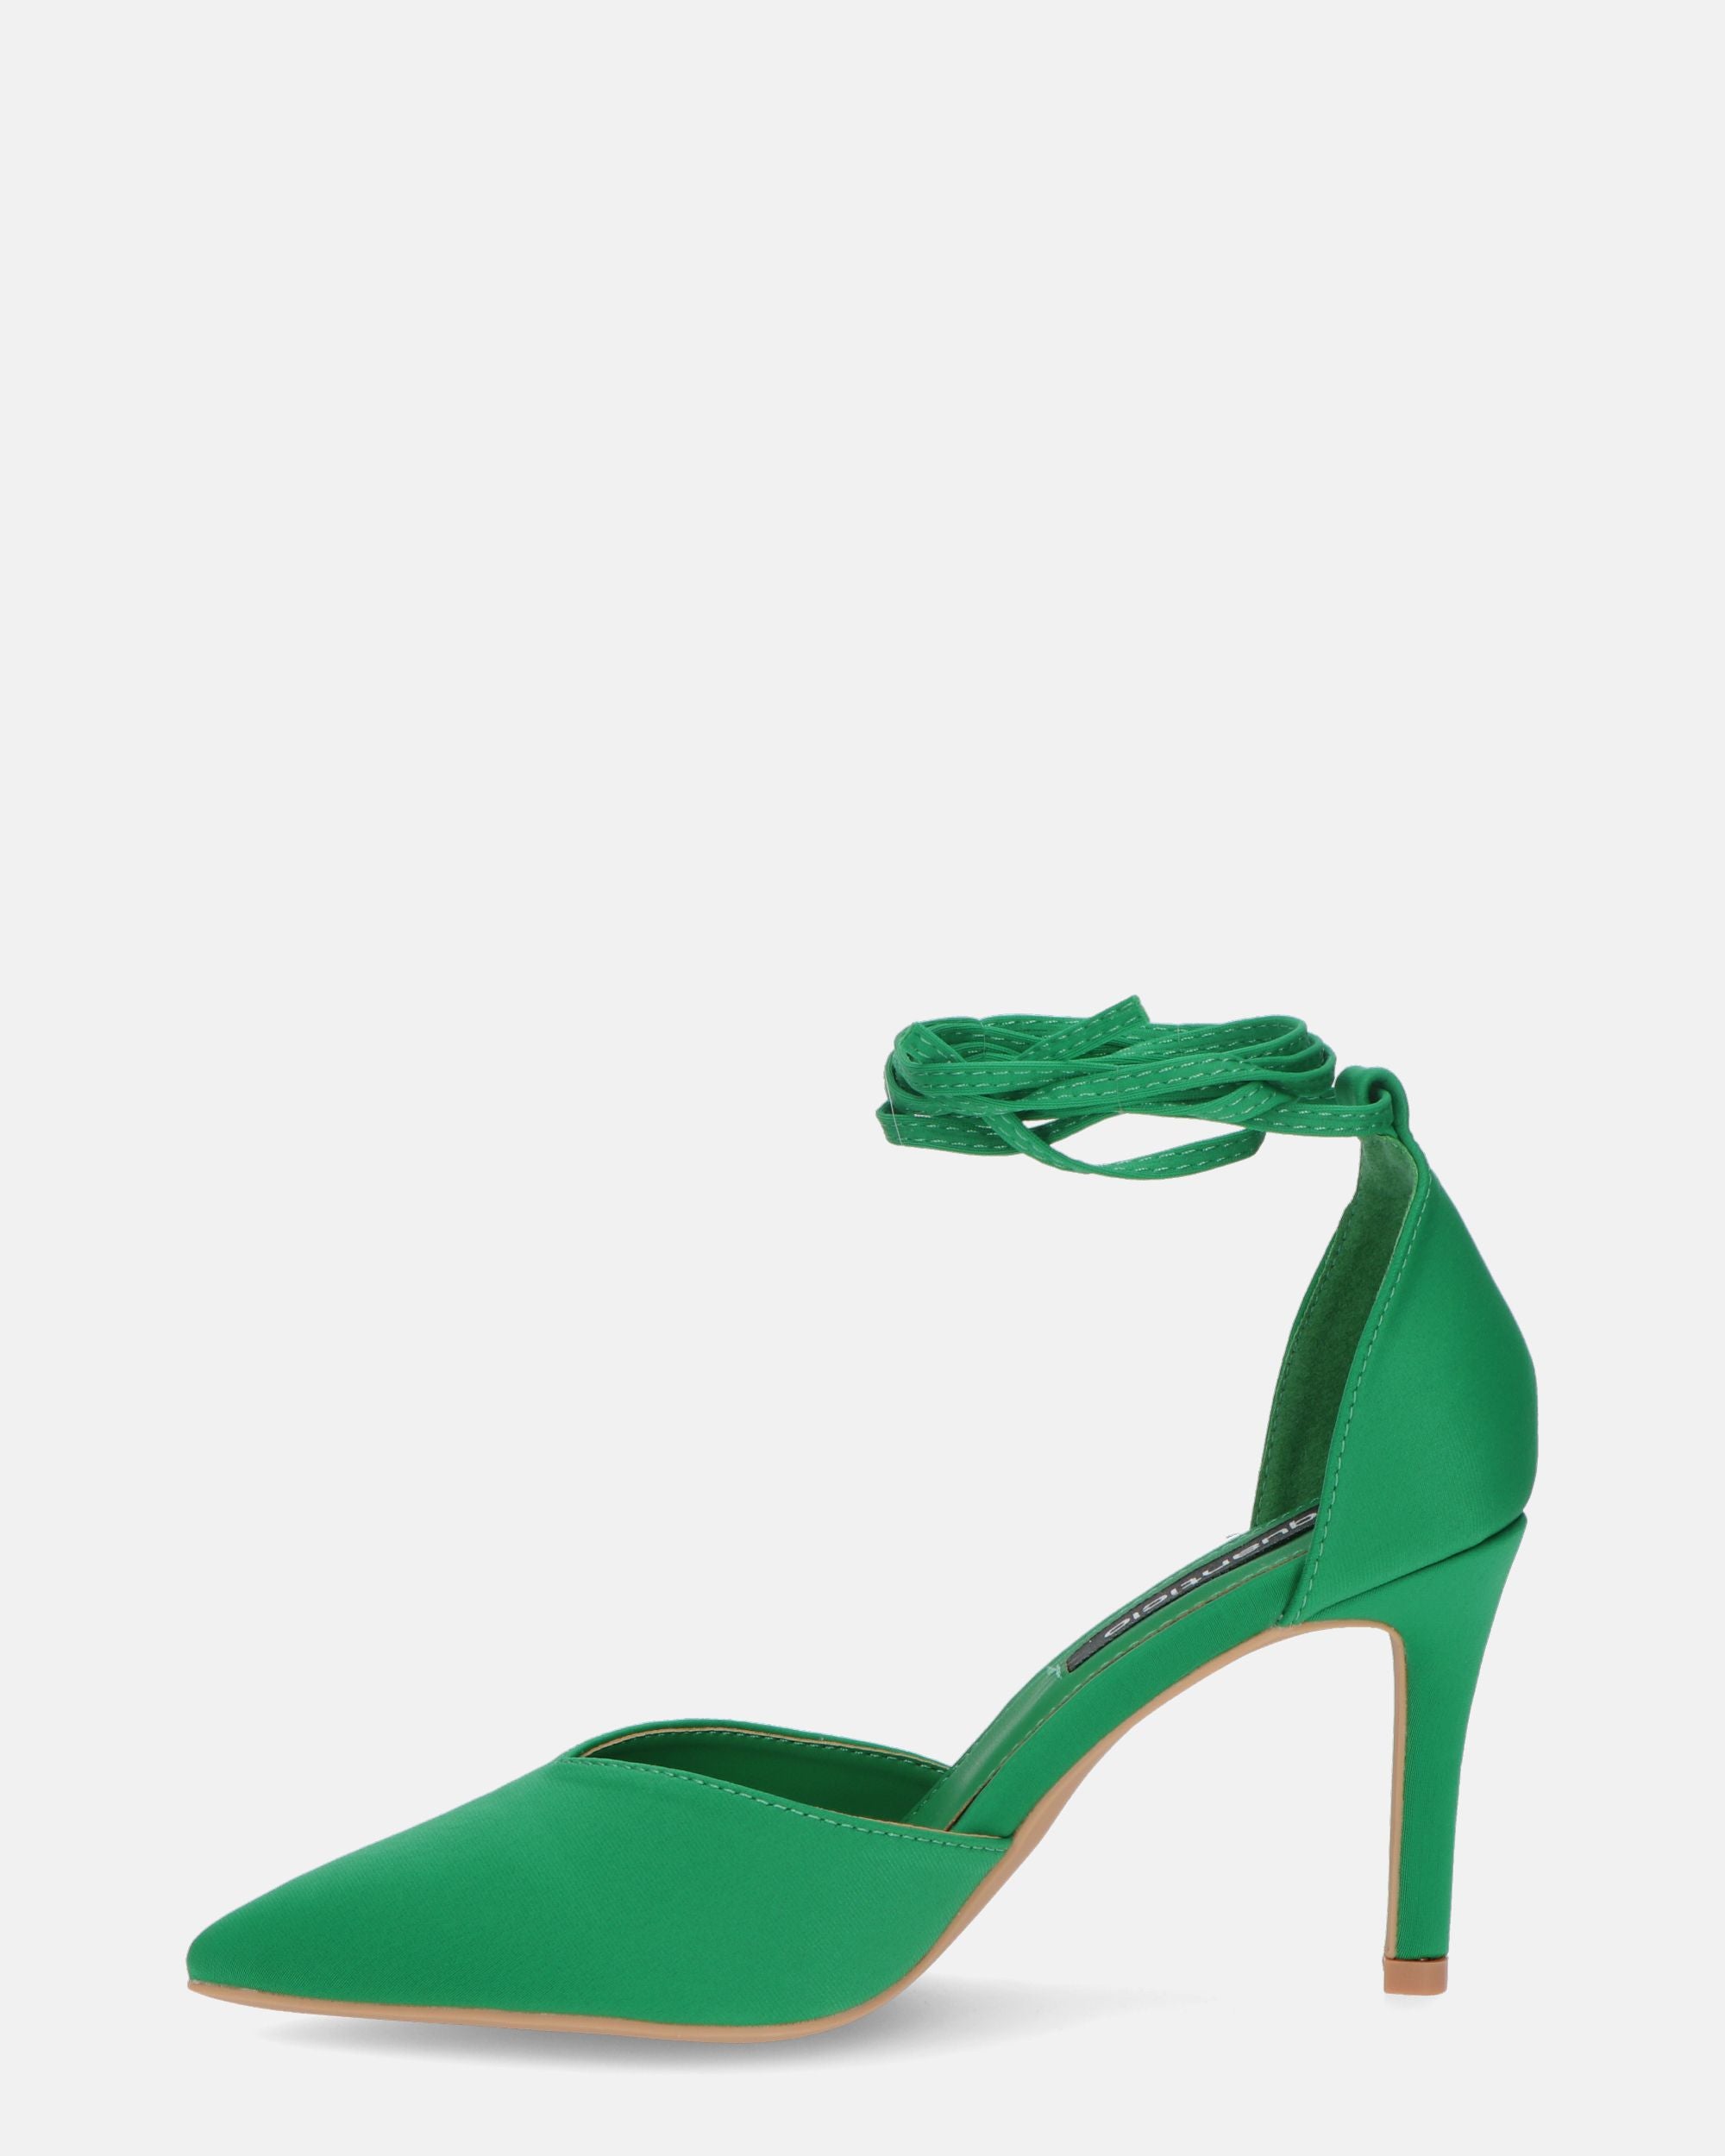 MAURA - pointed stiletto heels in green lycra